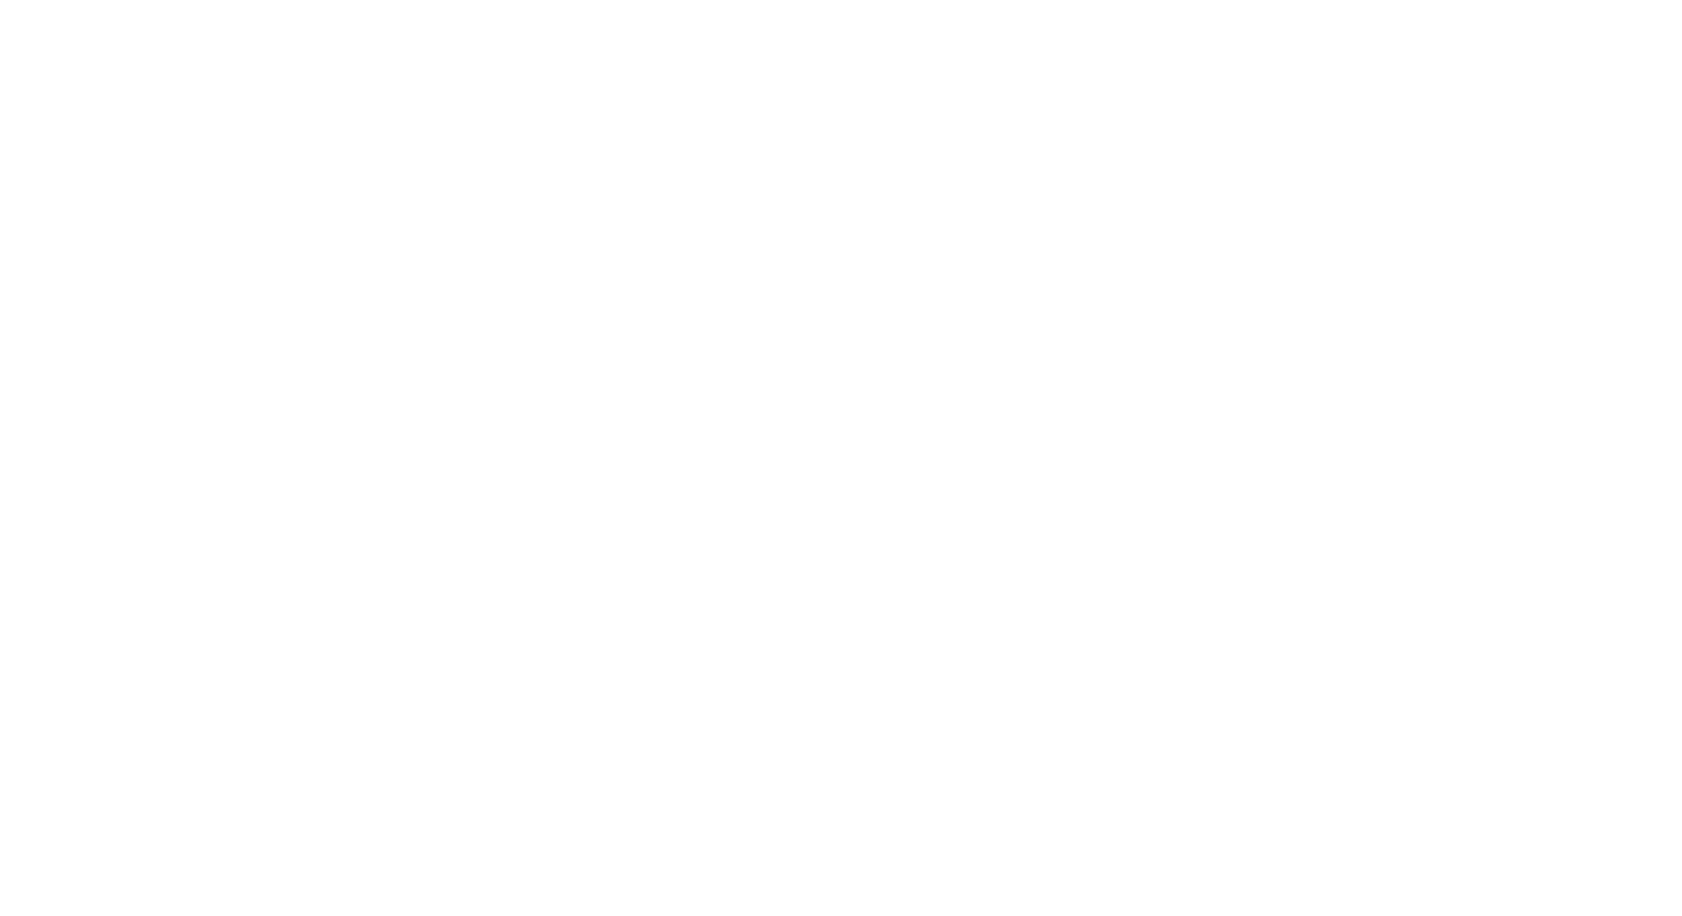 Parkinson Place